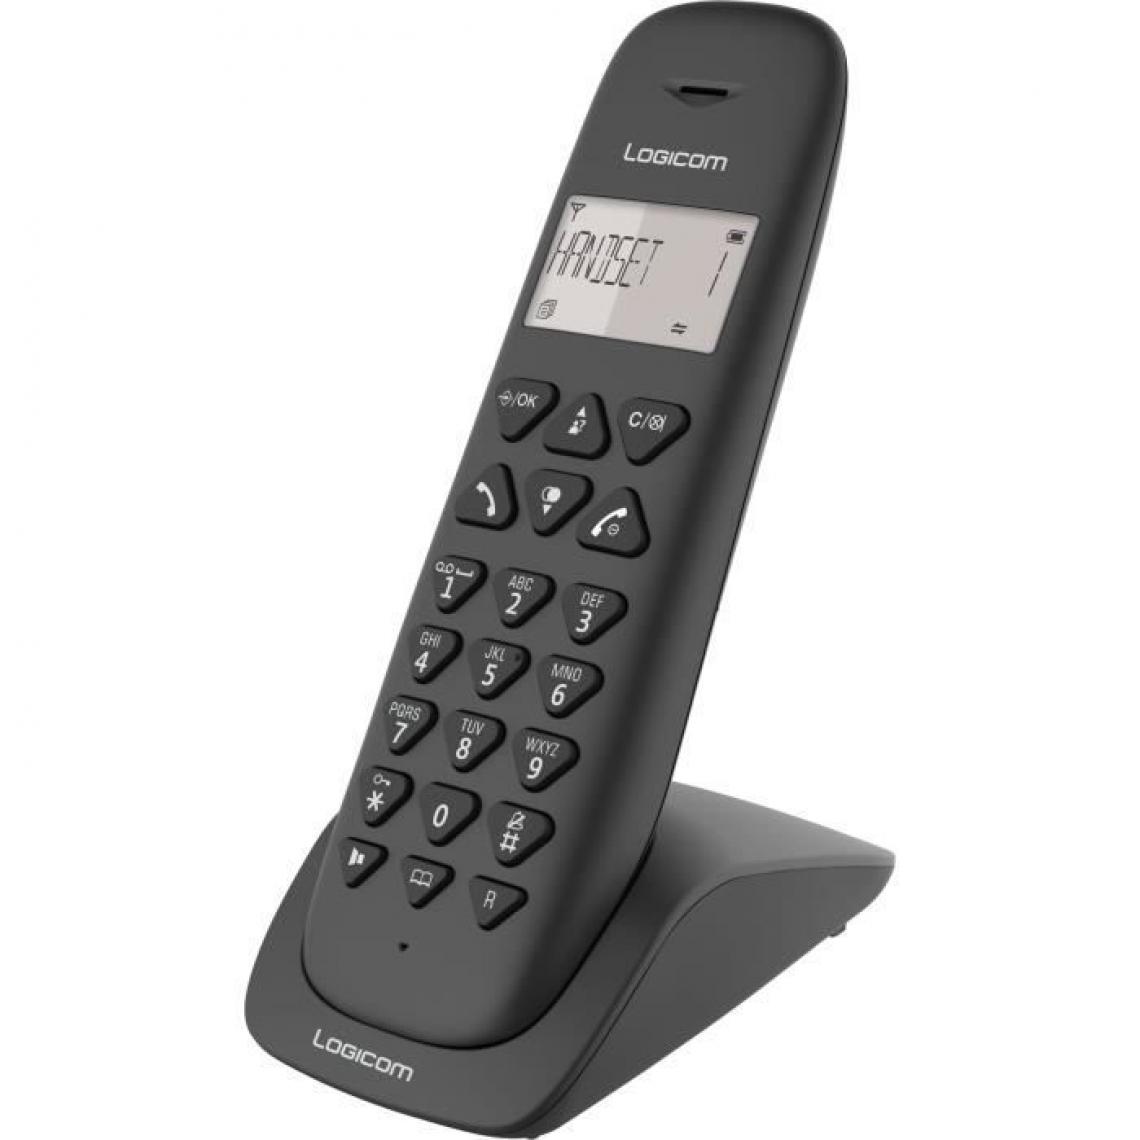 Logicom - LOGICOM Téléphone sans fil VEGA 155T SOLO Noir avec répondeur - Téléphone fixe sans fil